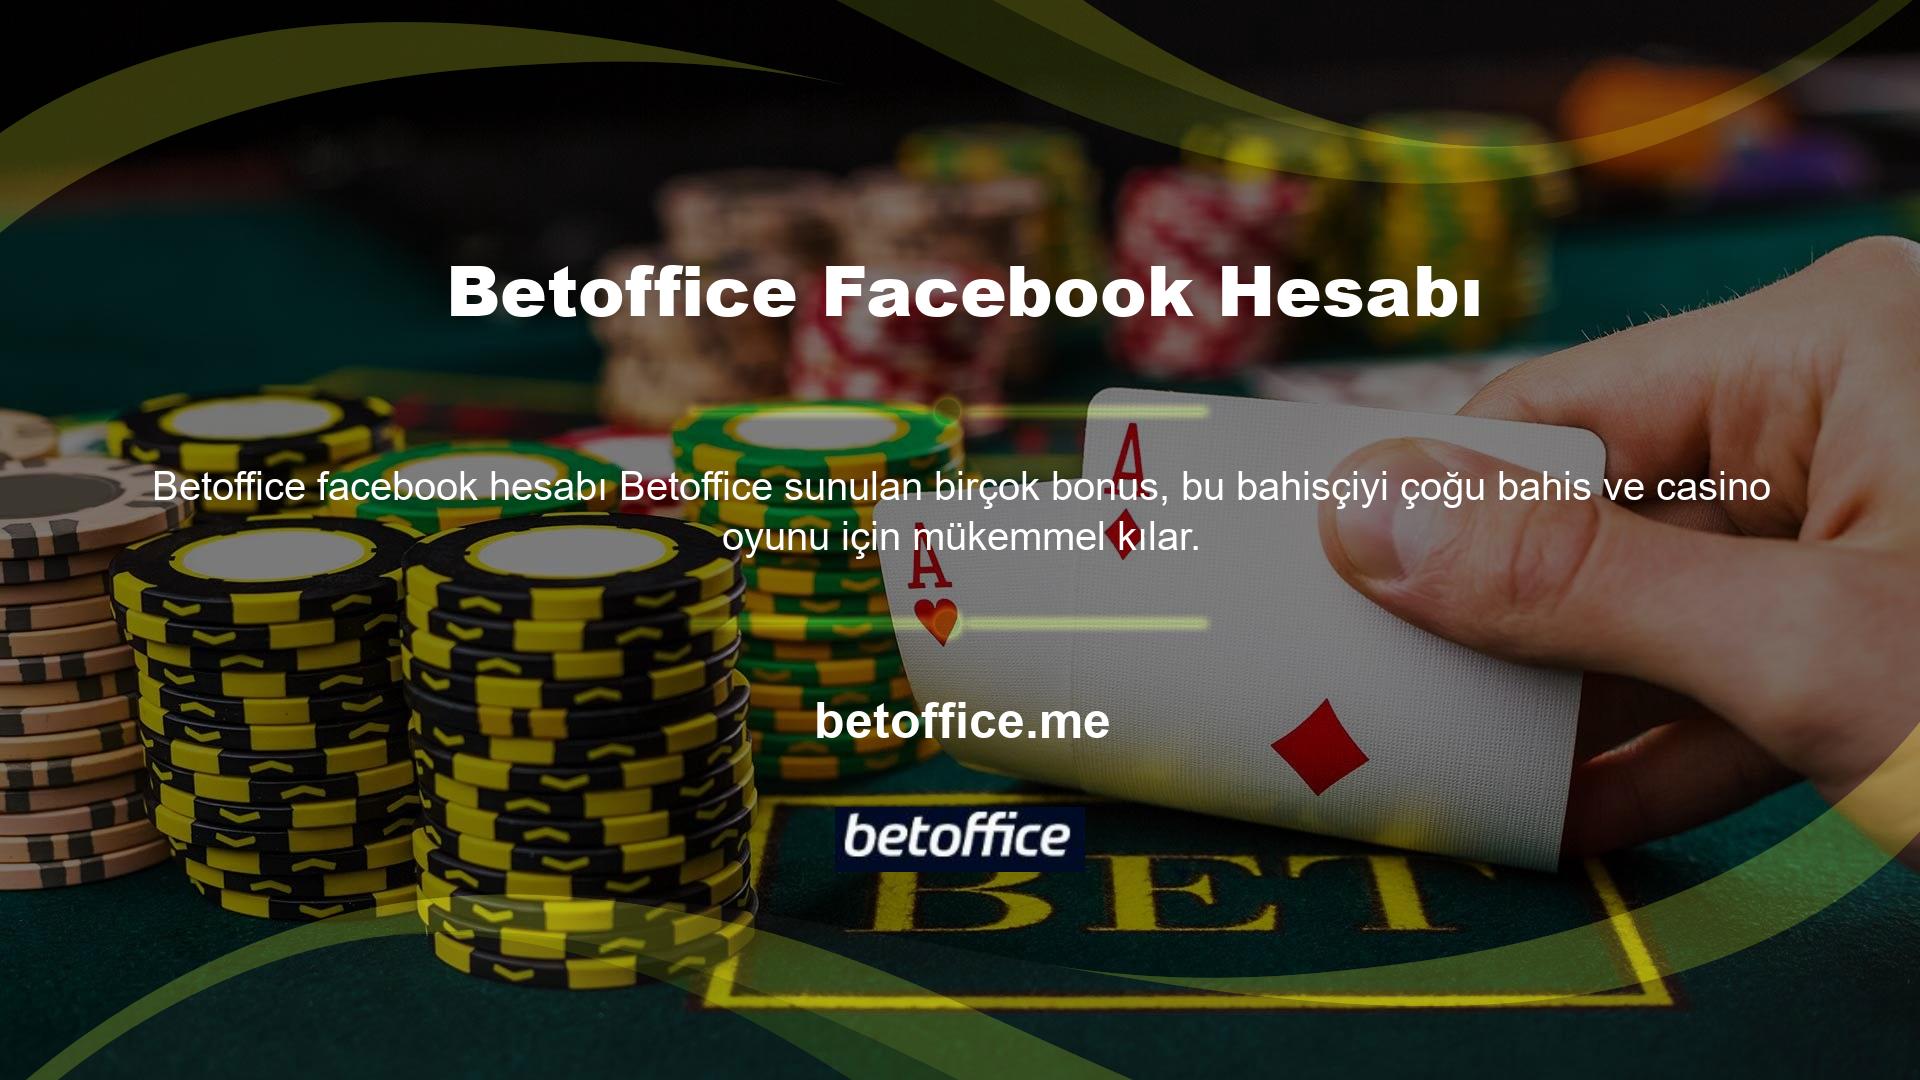 Casino oyununa özel bonuslar ve çevrim bonusları Betoffice web sitesinin Facebook hesabında duyuru olarak paylaşılmaktadır